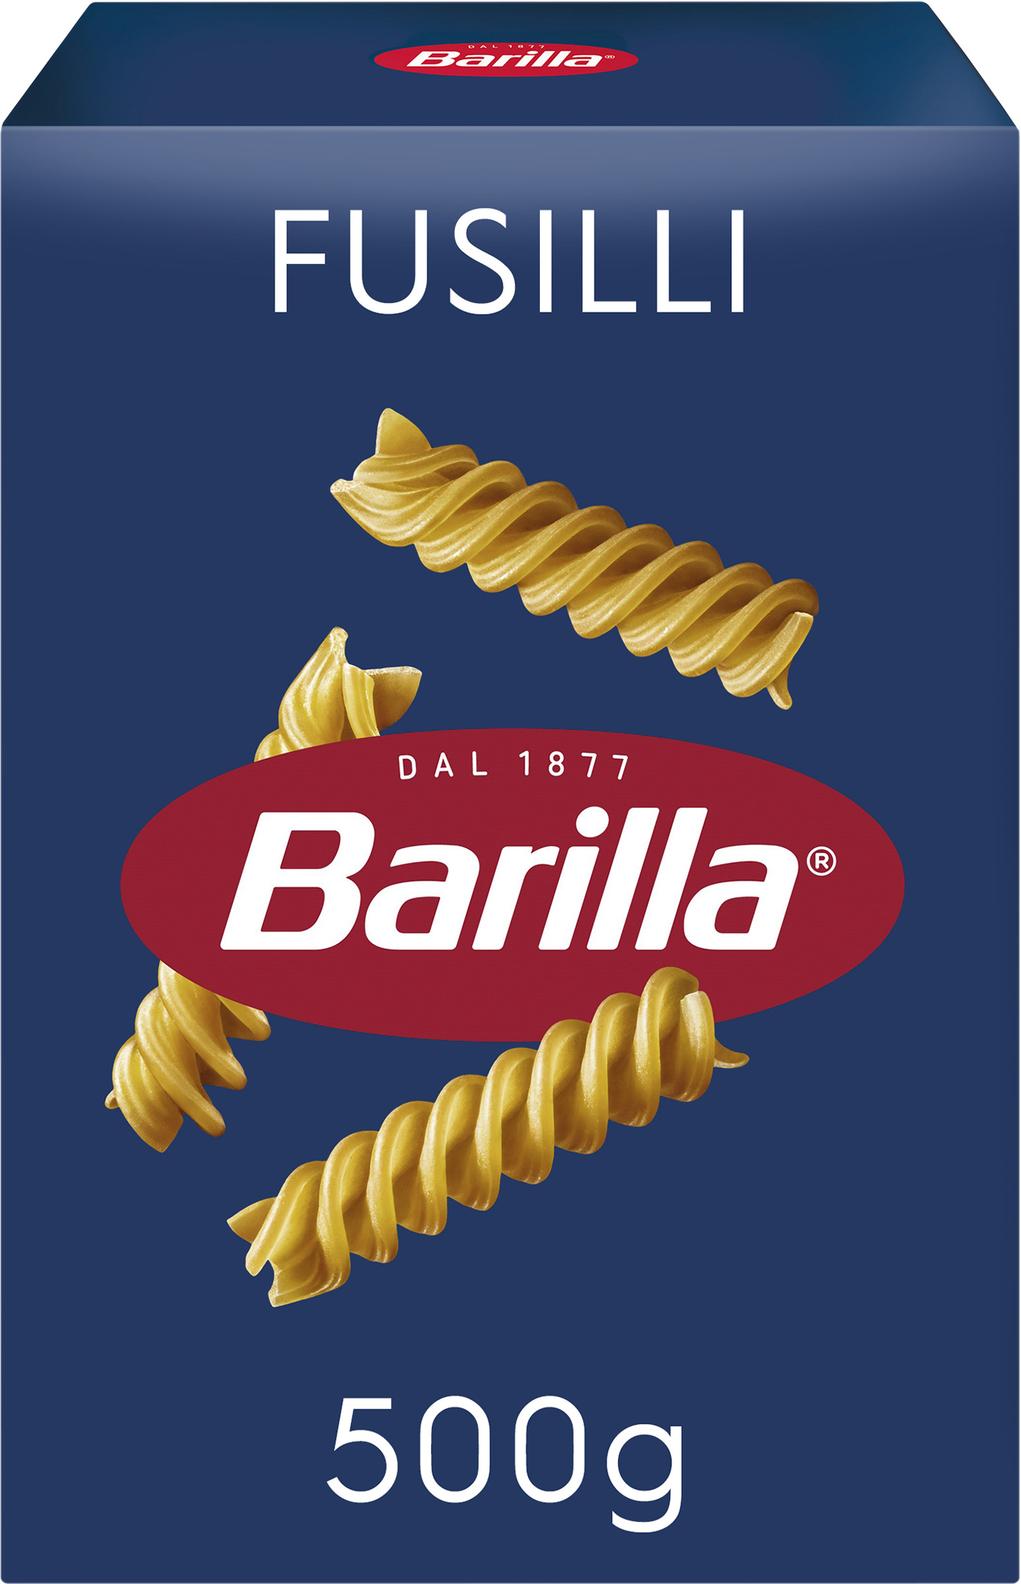 Pasta Fusilli för 12,5 kr på MatHem